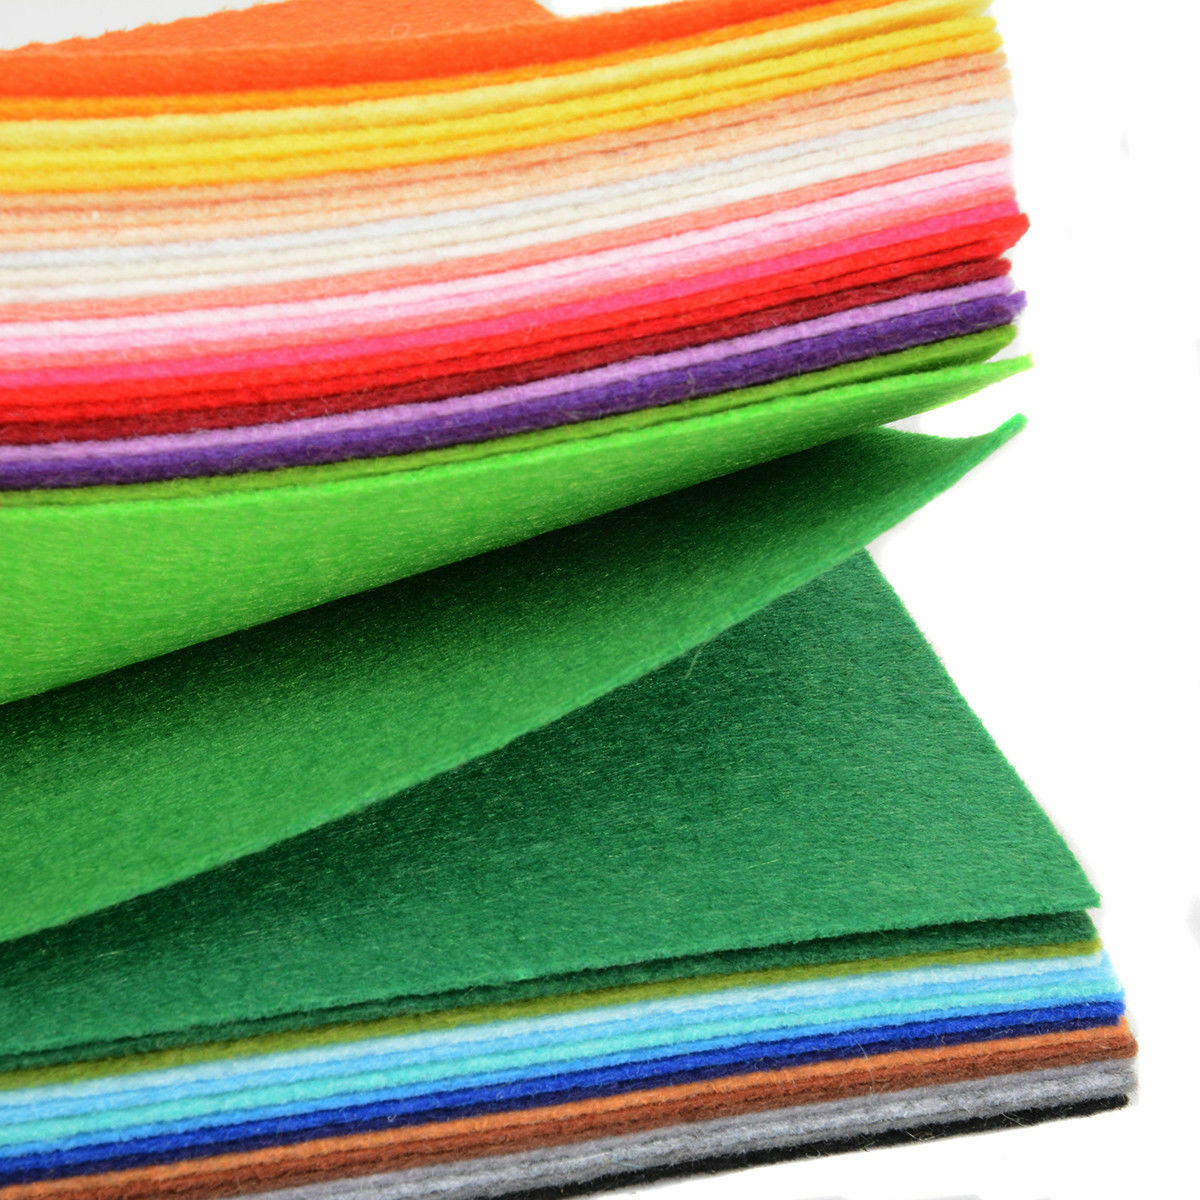 40pcs Mixed Color Soft Nonwoven Felt Fabric Sheets DIY Craft Patchwork